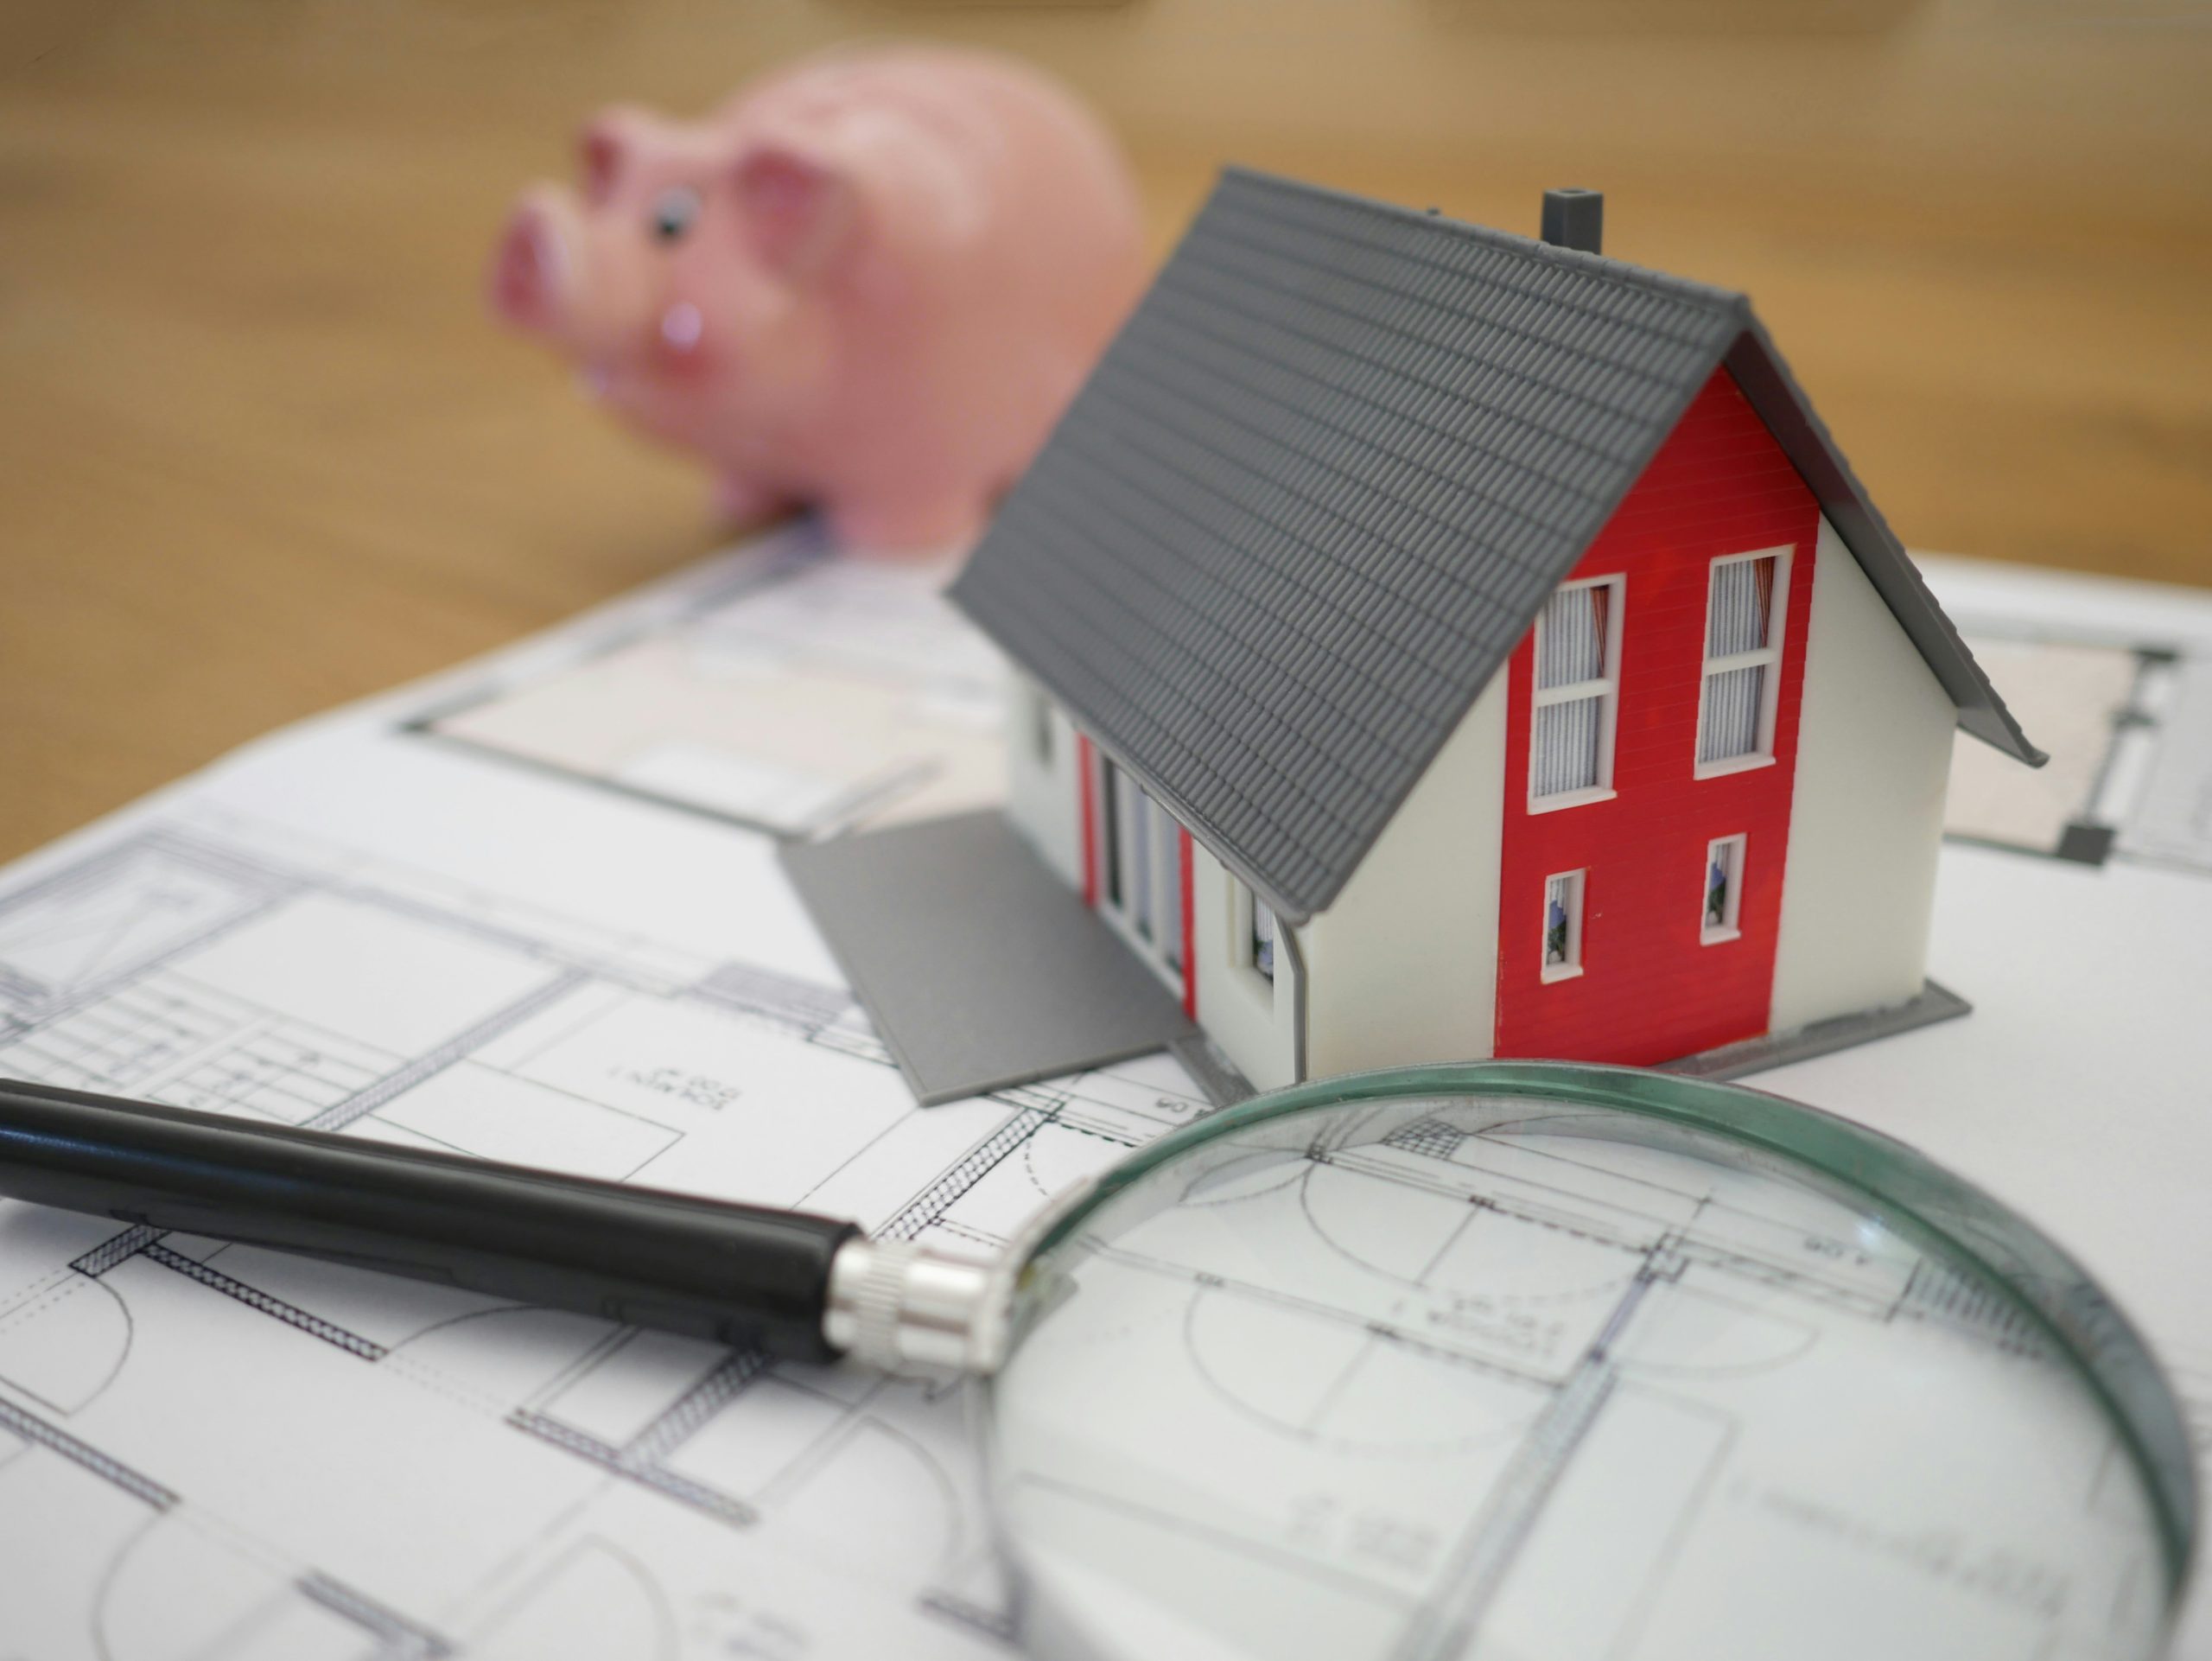 découvrez tous nos conseils pour obtenir un crédit immobilier au meilleur taux et réaliser votre projet immobilier en toute sérénité.